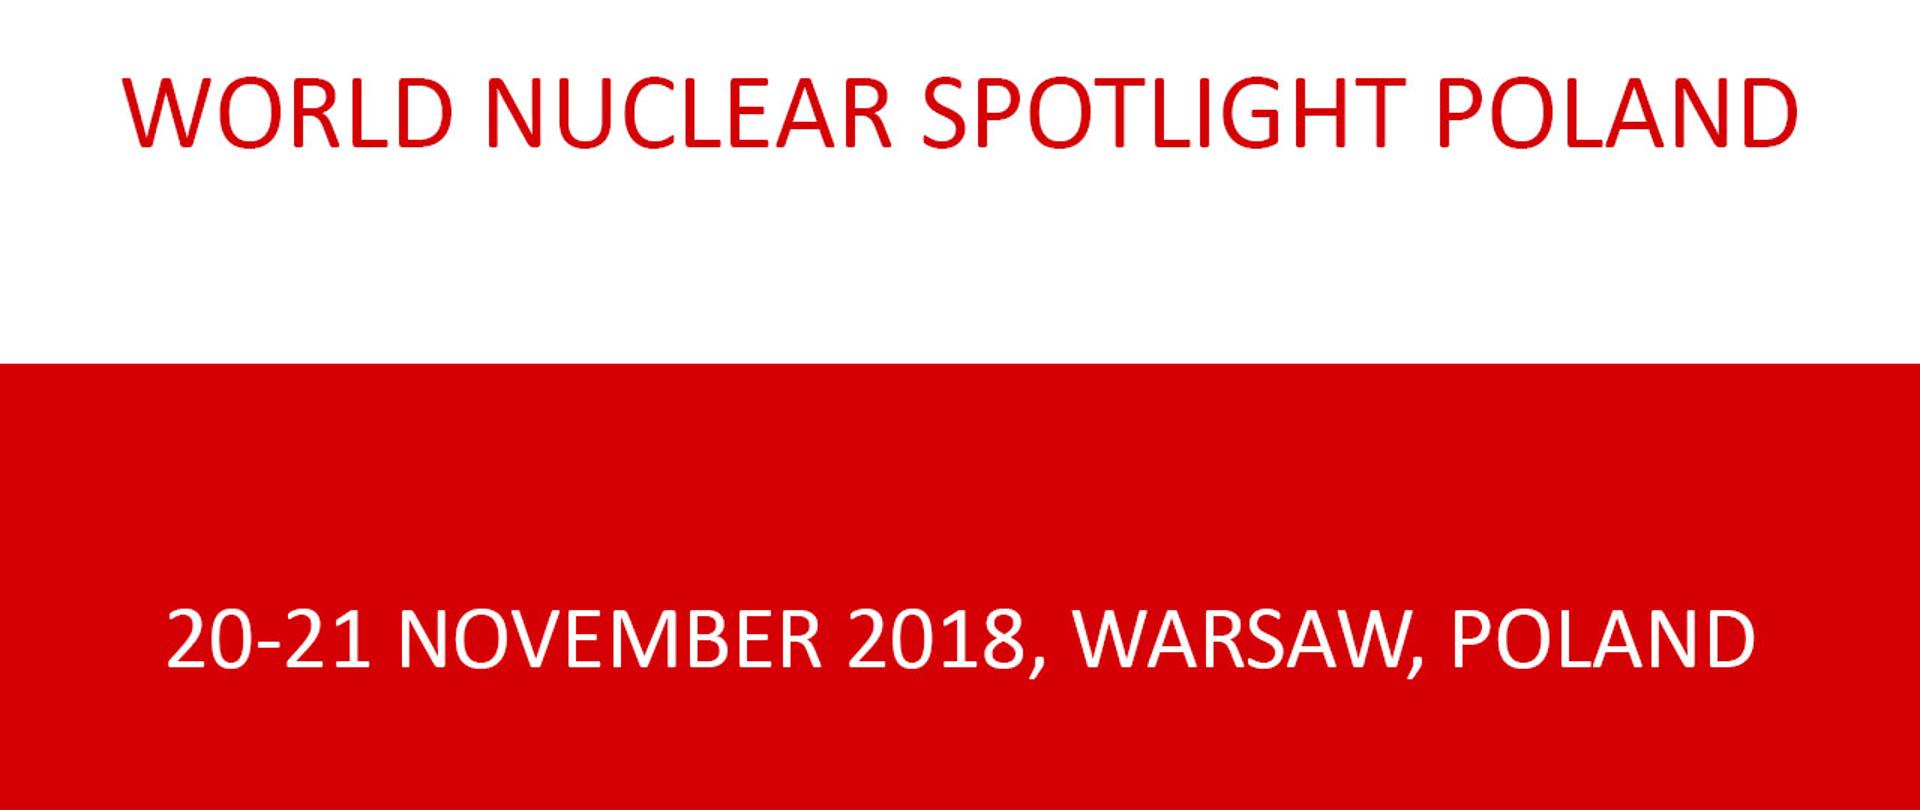 World Nuclear Spotlight Poland 